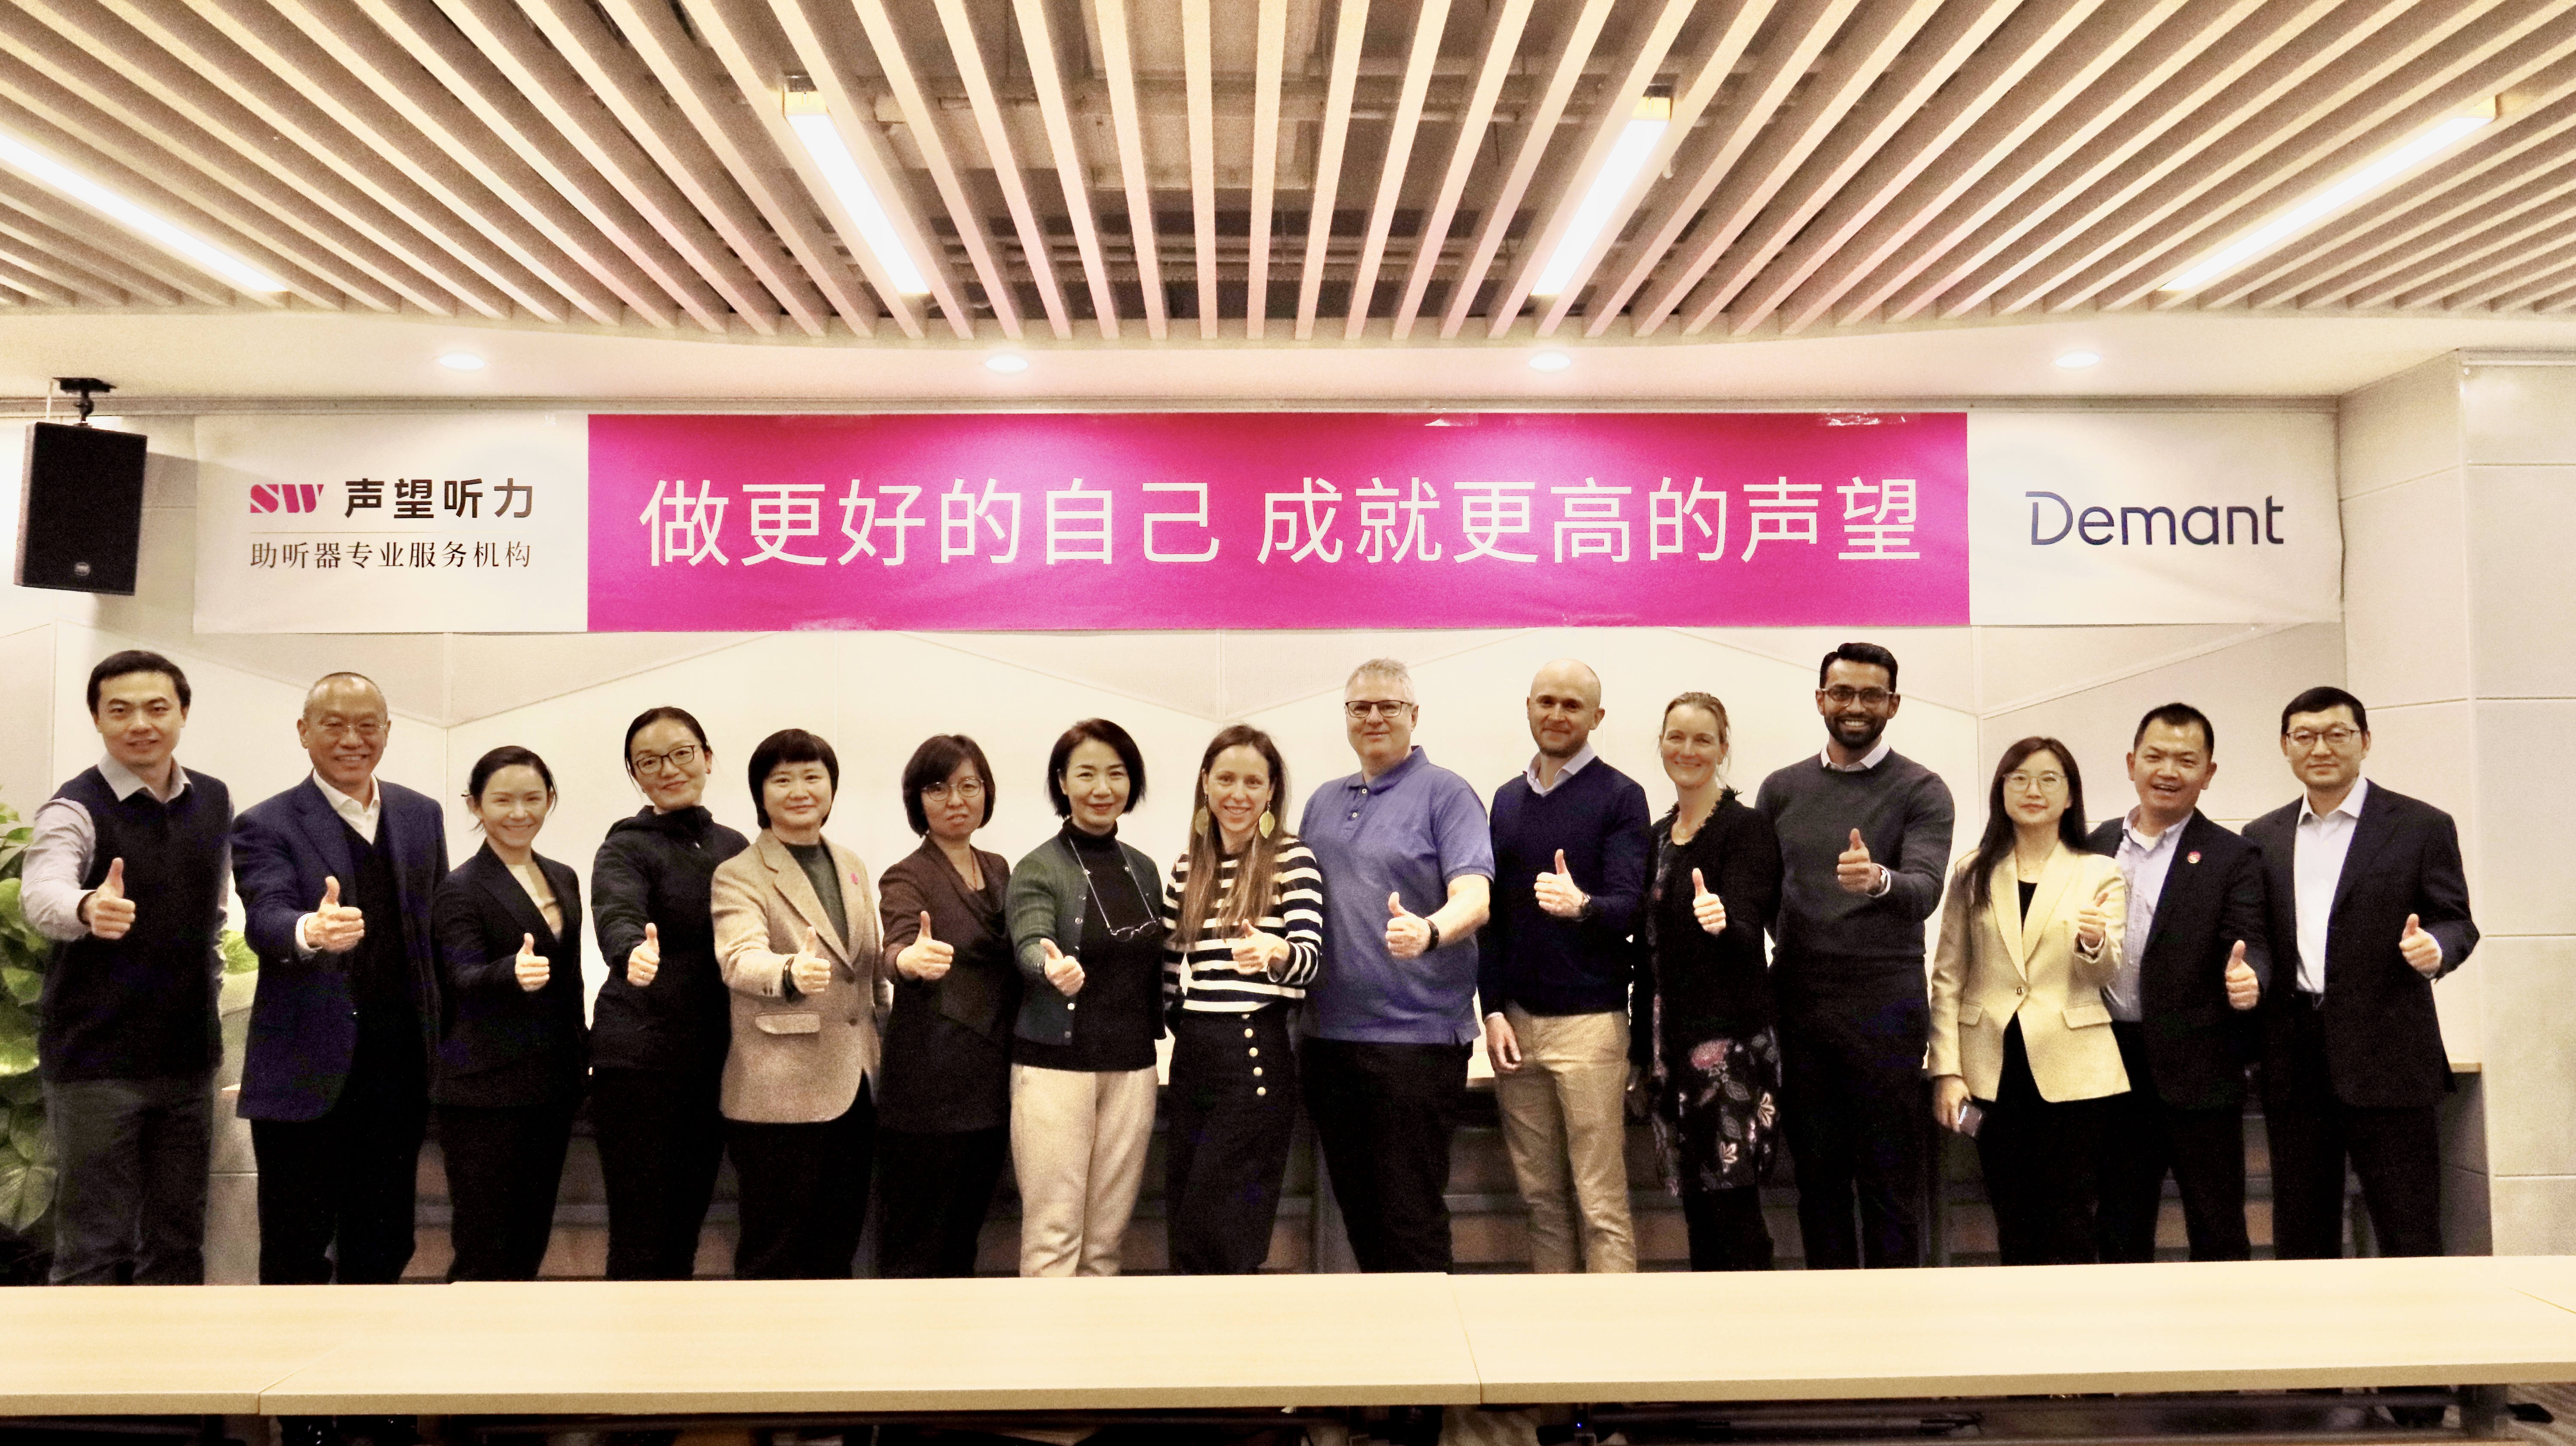 丹麦Demant集团产品团队来华调研访问 助力健康中国事业